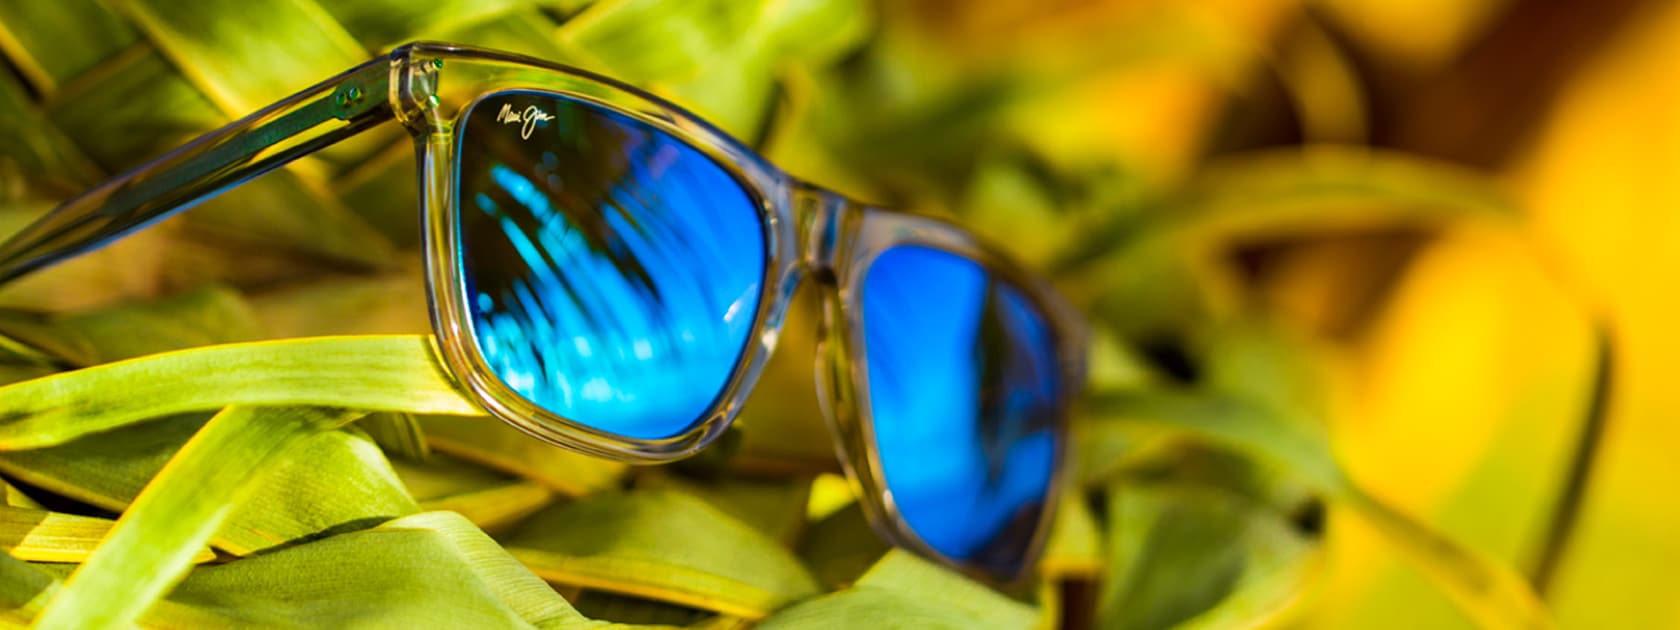 lunettes de soleil à monture transparente avec verres bleus présentées sur feuille de palmier verte